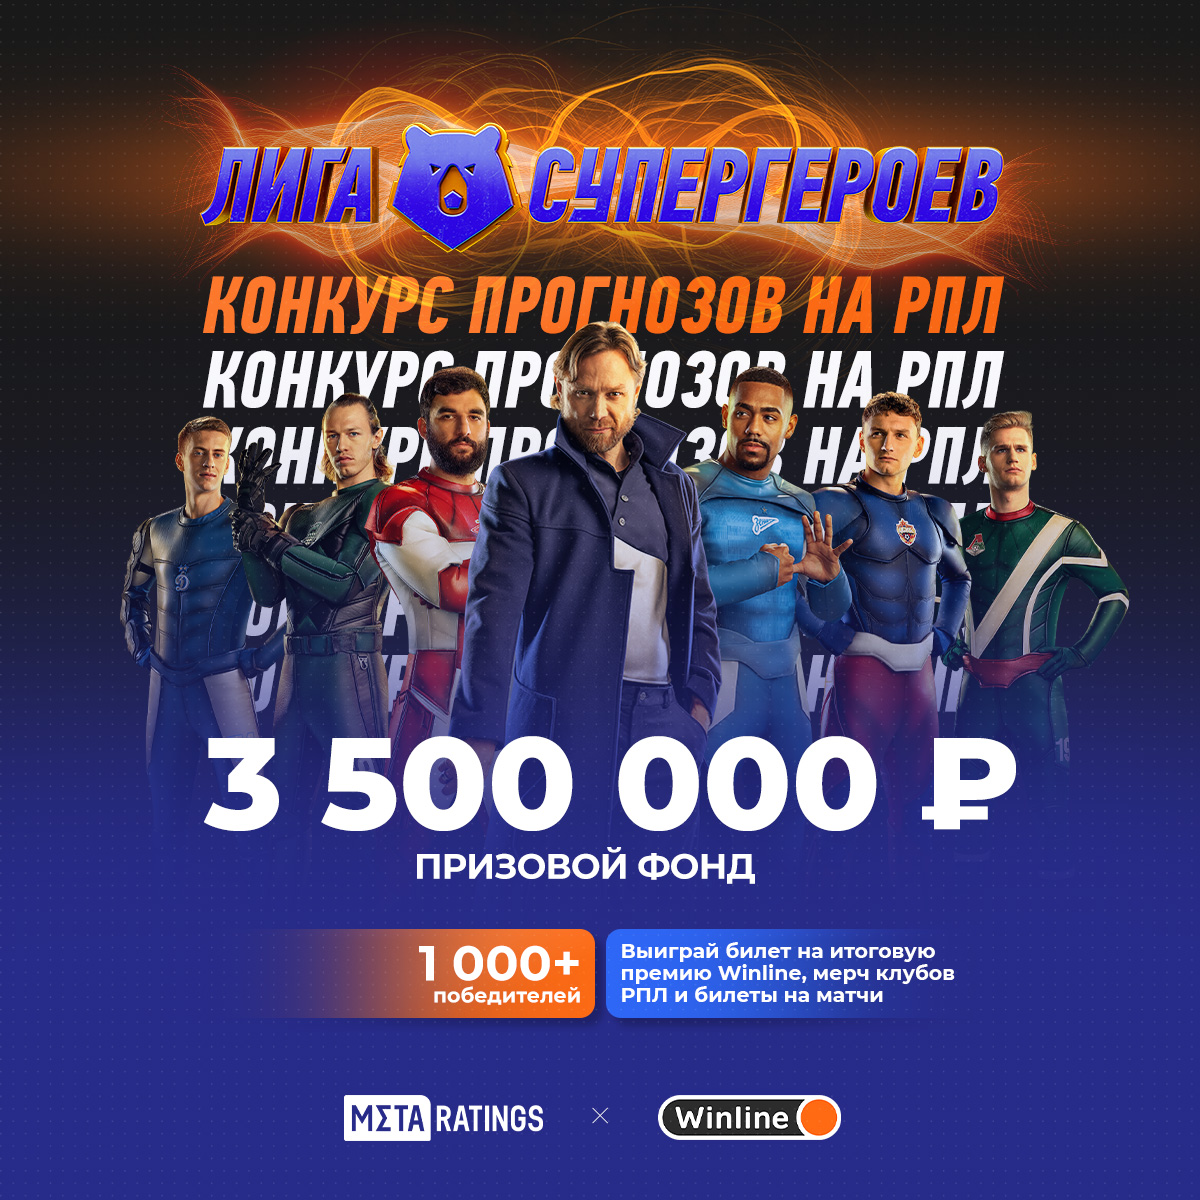 Metaratings и Winline запускают конкурс прогнозов на матчи РПЛ с призовым фондом 3,5 млн рублей